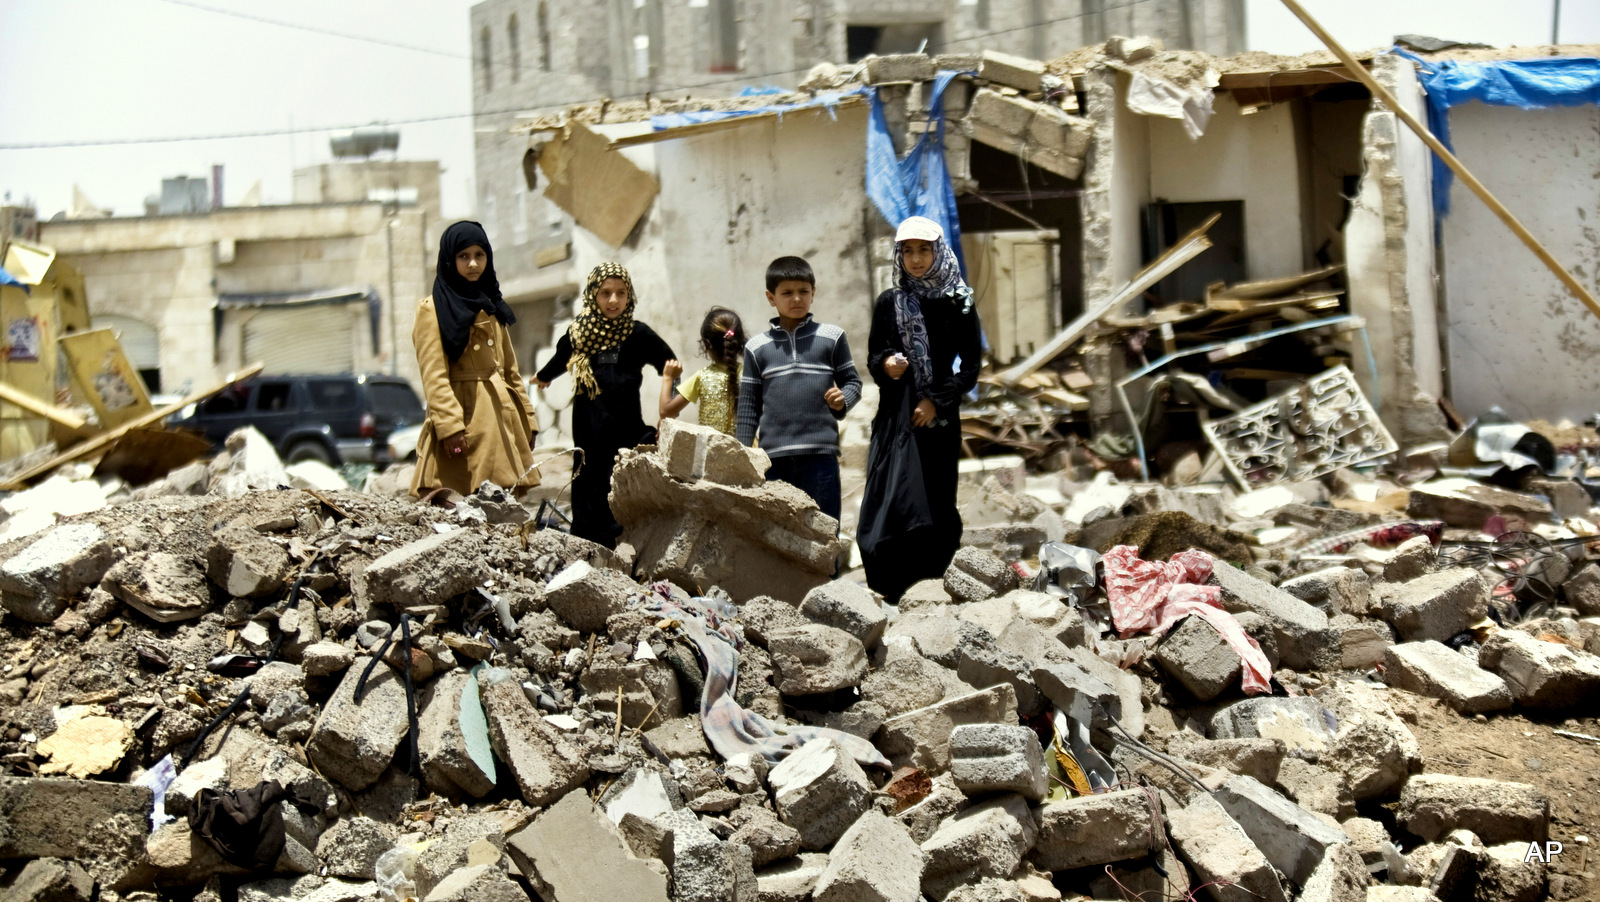 [Action Alert] Stop Weapons Sales to Saudi Arabia. End the War in Yemen.